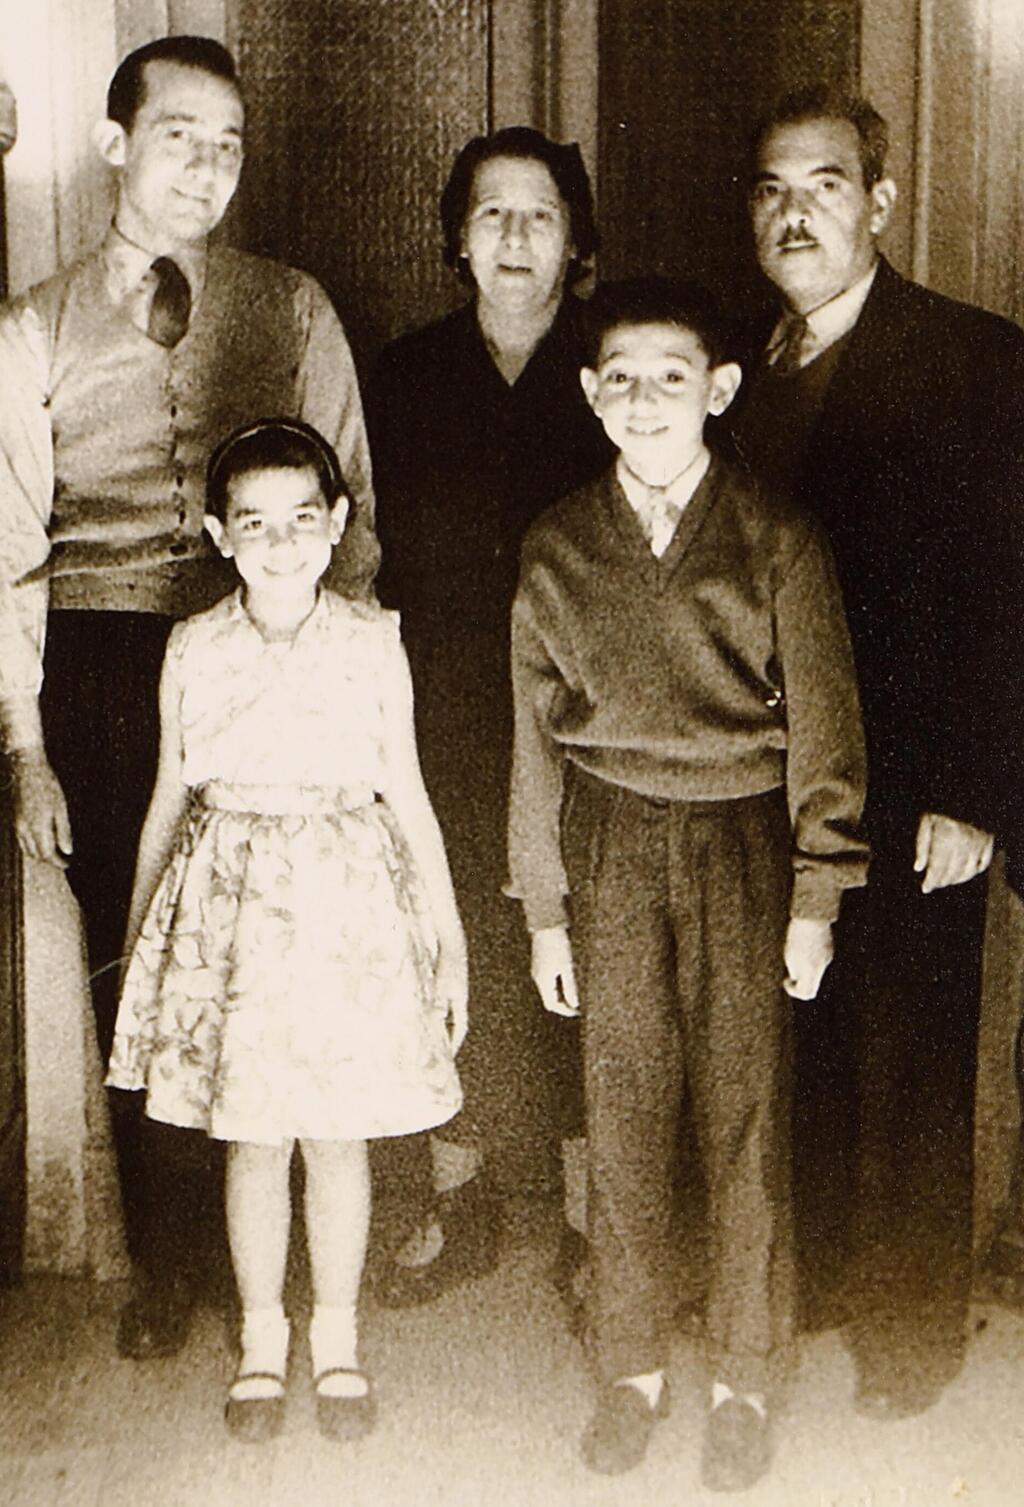 אלי וסטלה כהן, ילדיהם בנימין (בני) ומטילד (מטי), ומרק לוי (משמאל), אחיה של סטלה, שהתגורר גם הוא בבית המשפחה